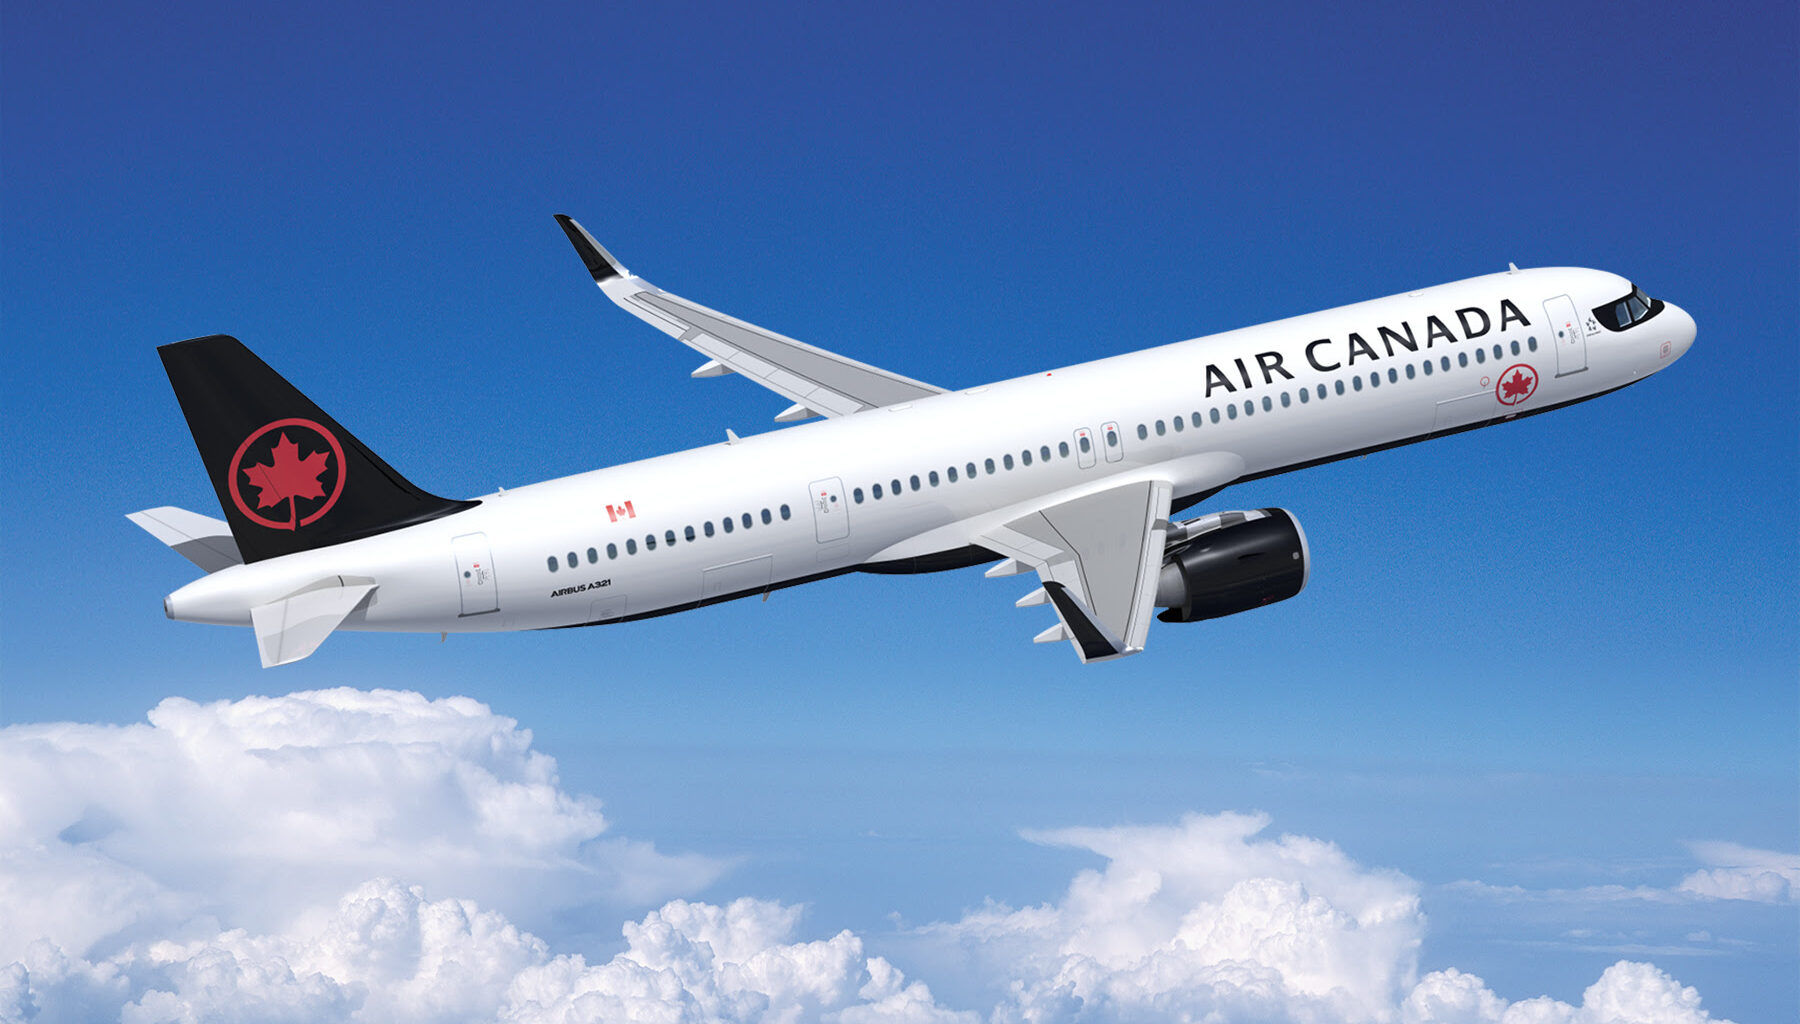 מטוס A321XLR של אייר קנדה